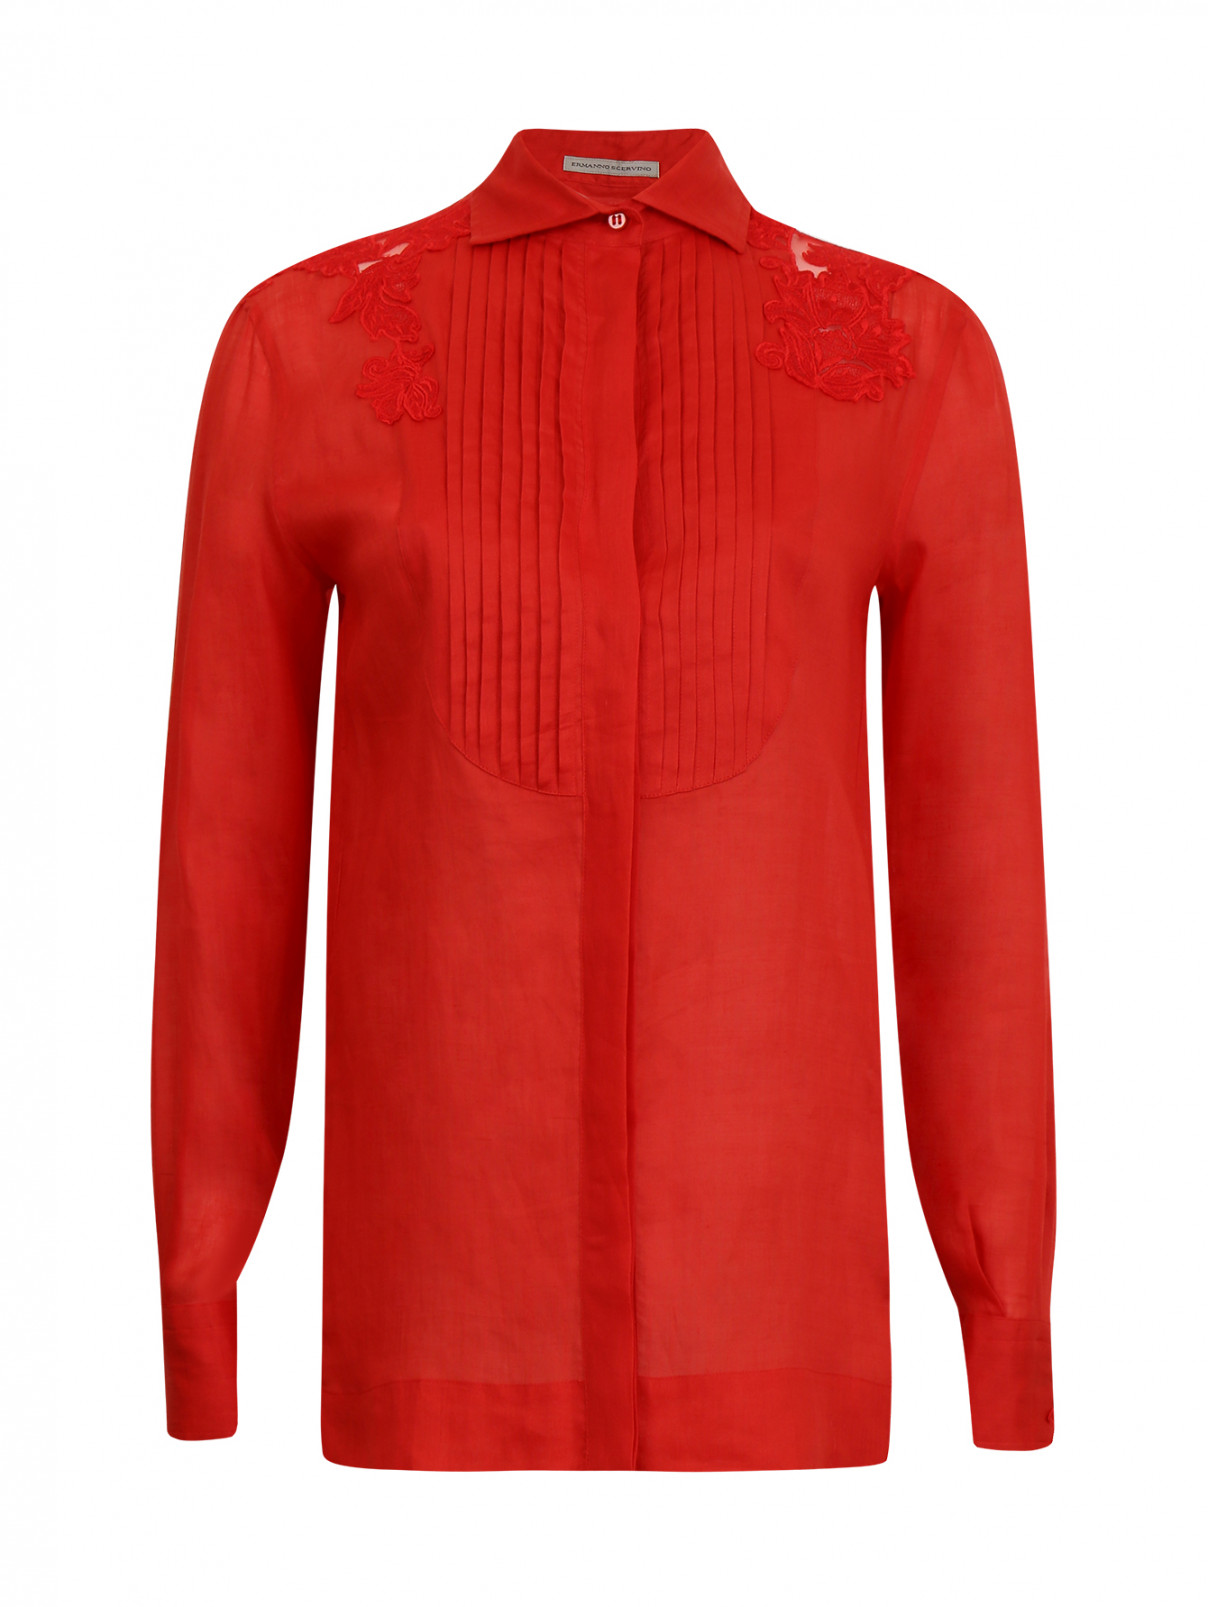 Блуза с отделкой из кружева Ermanno Scervino  –  Общий вид  – Цвет:  Красный